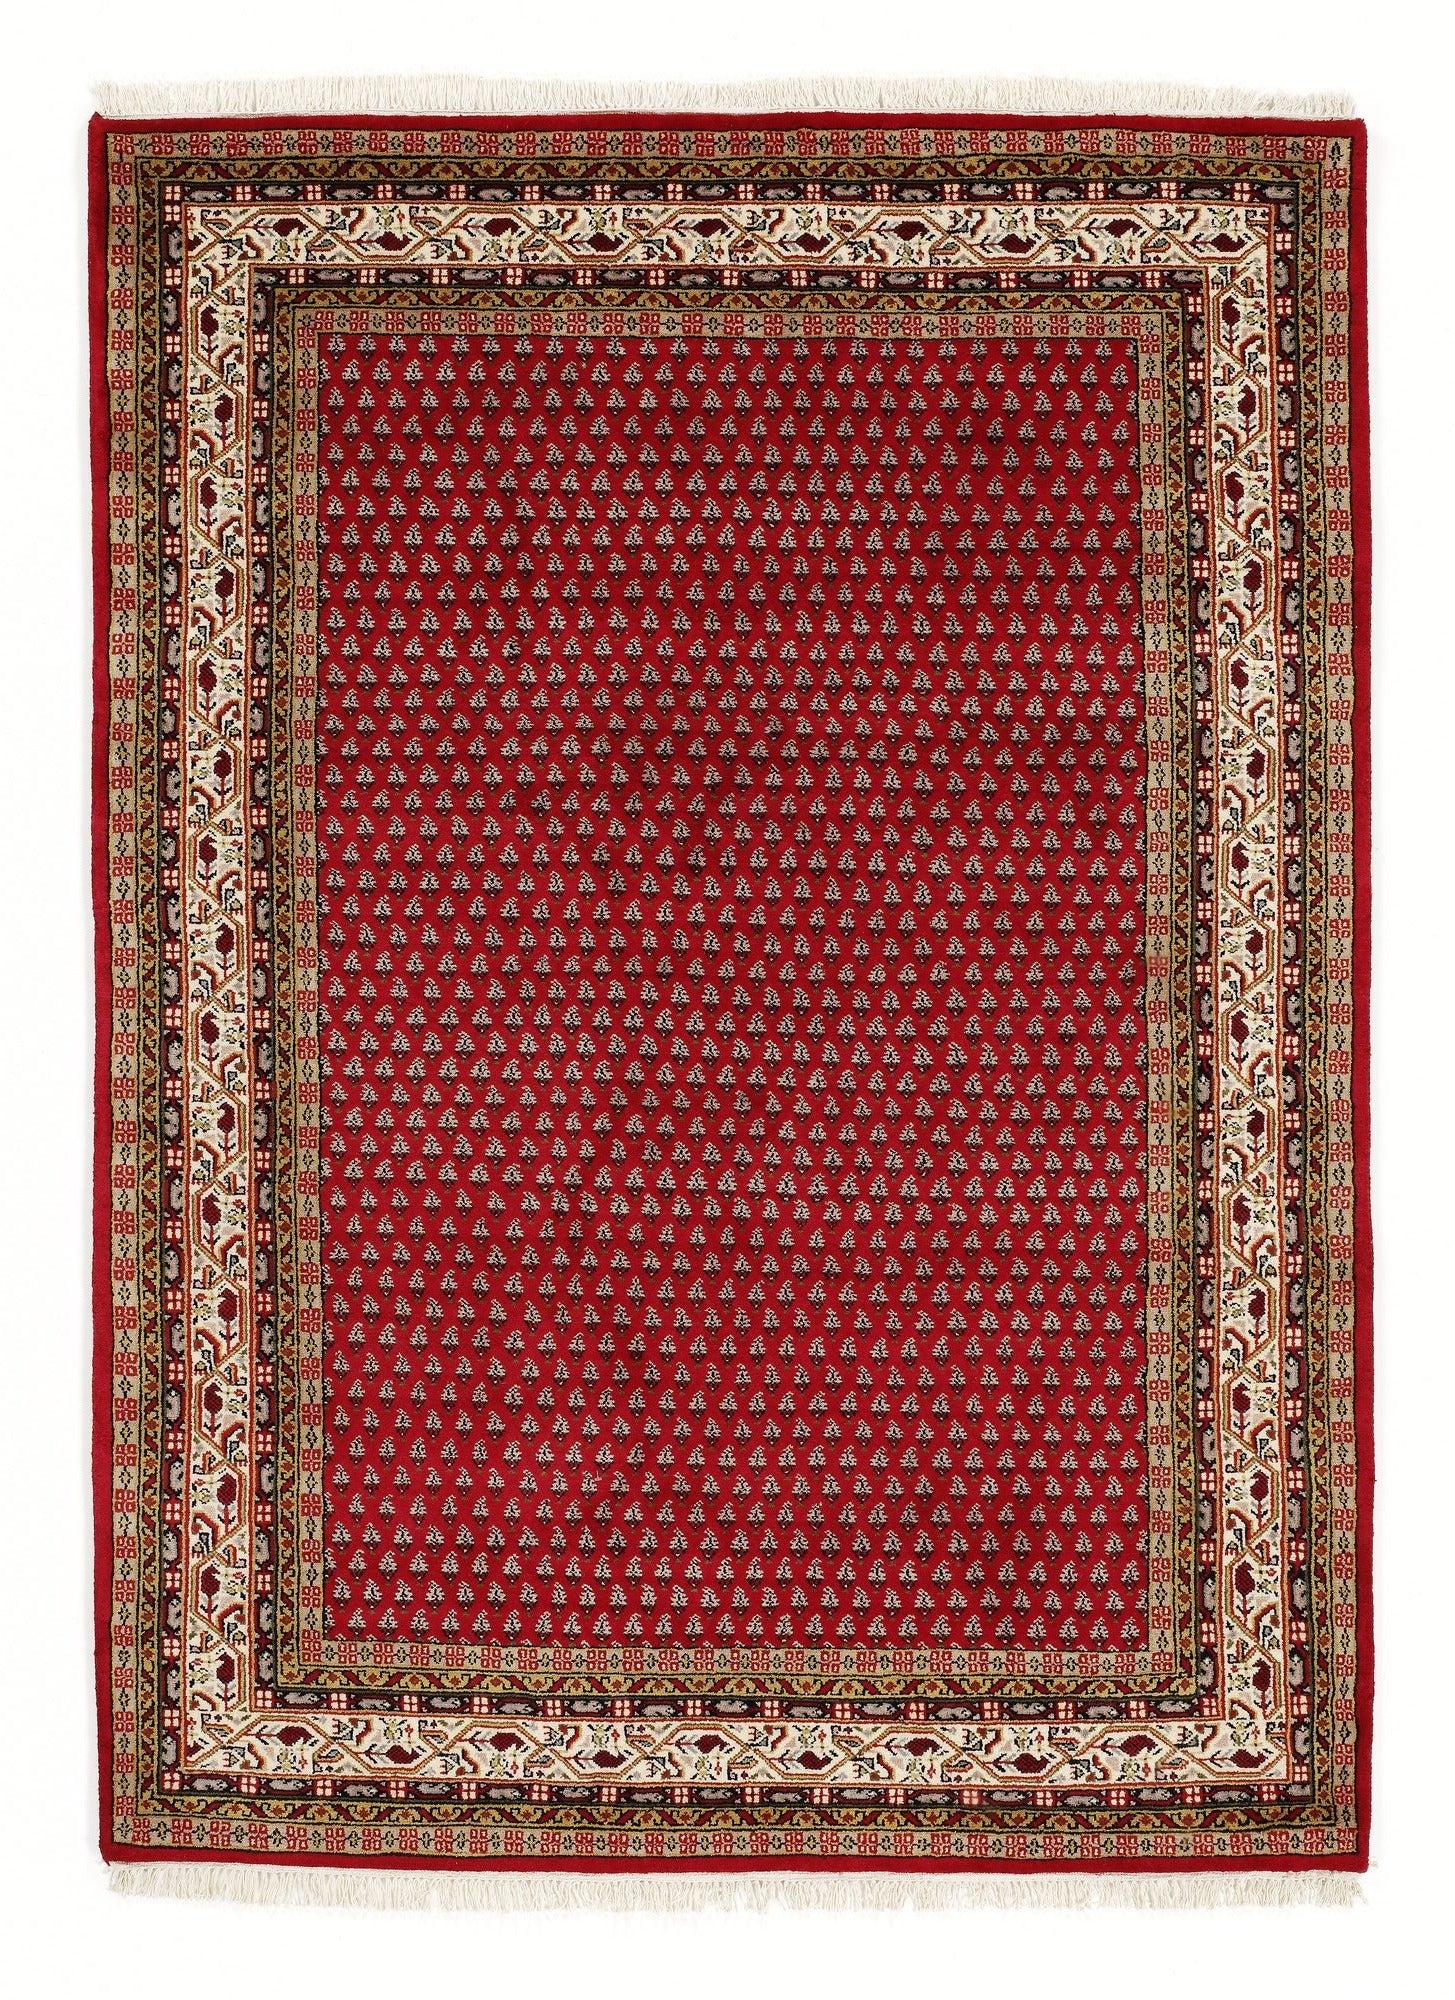 OCI Teppich INDO MIR RED SAKKI MIR echter klassischer Orient-Teppich handgeknüpft